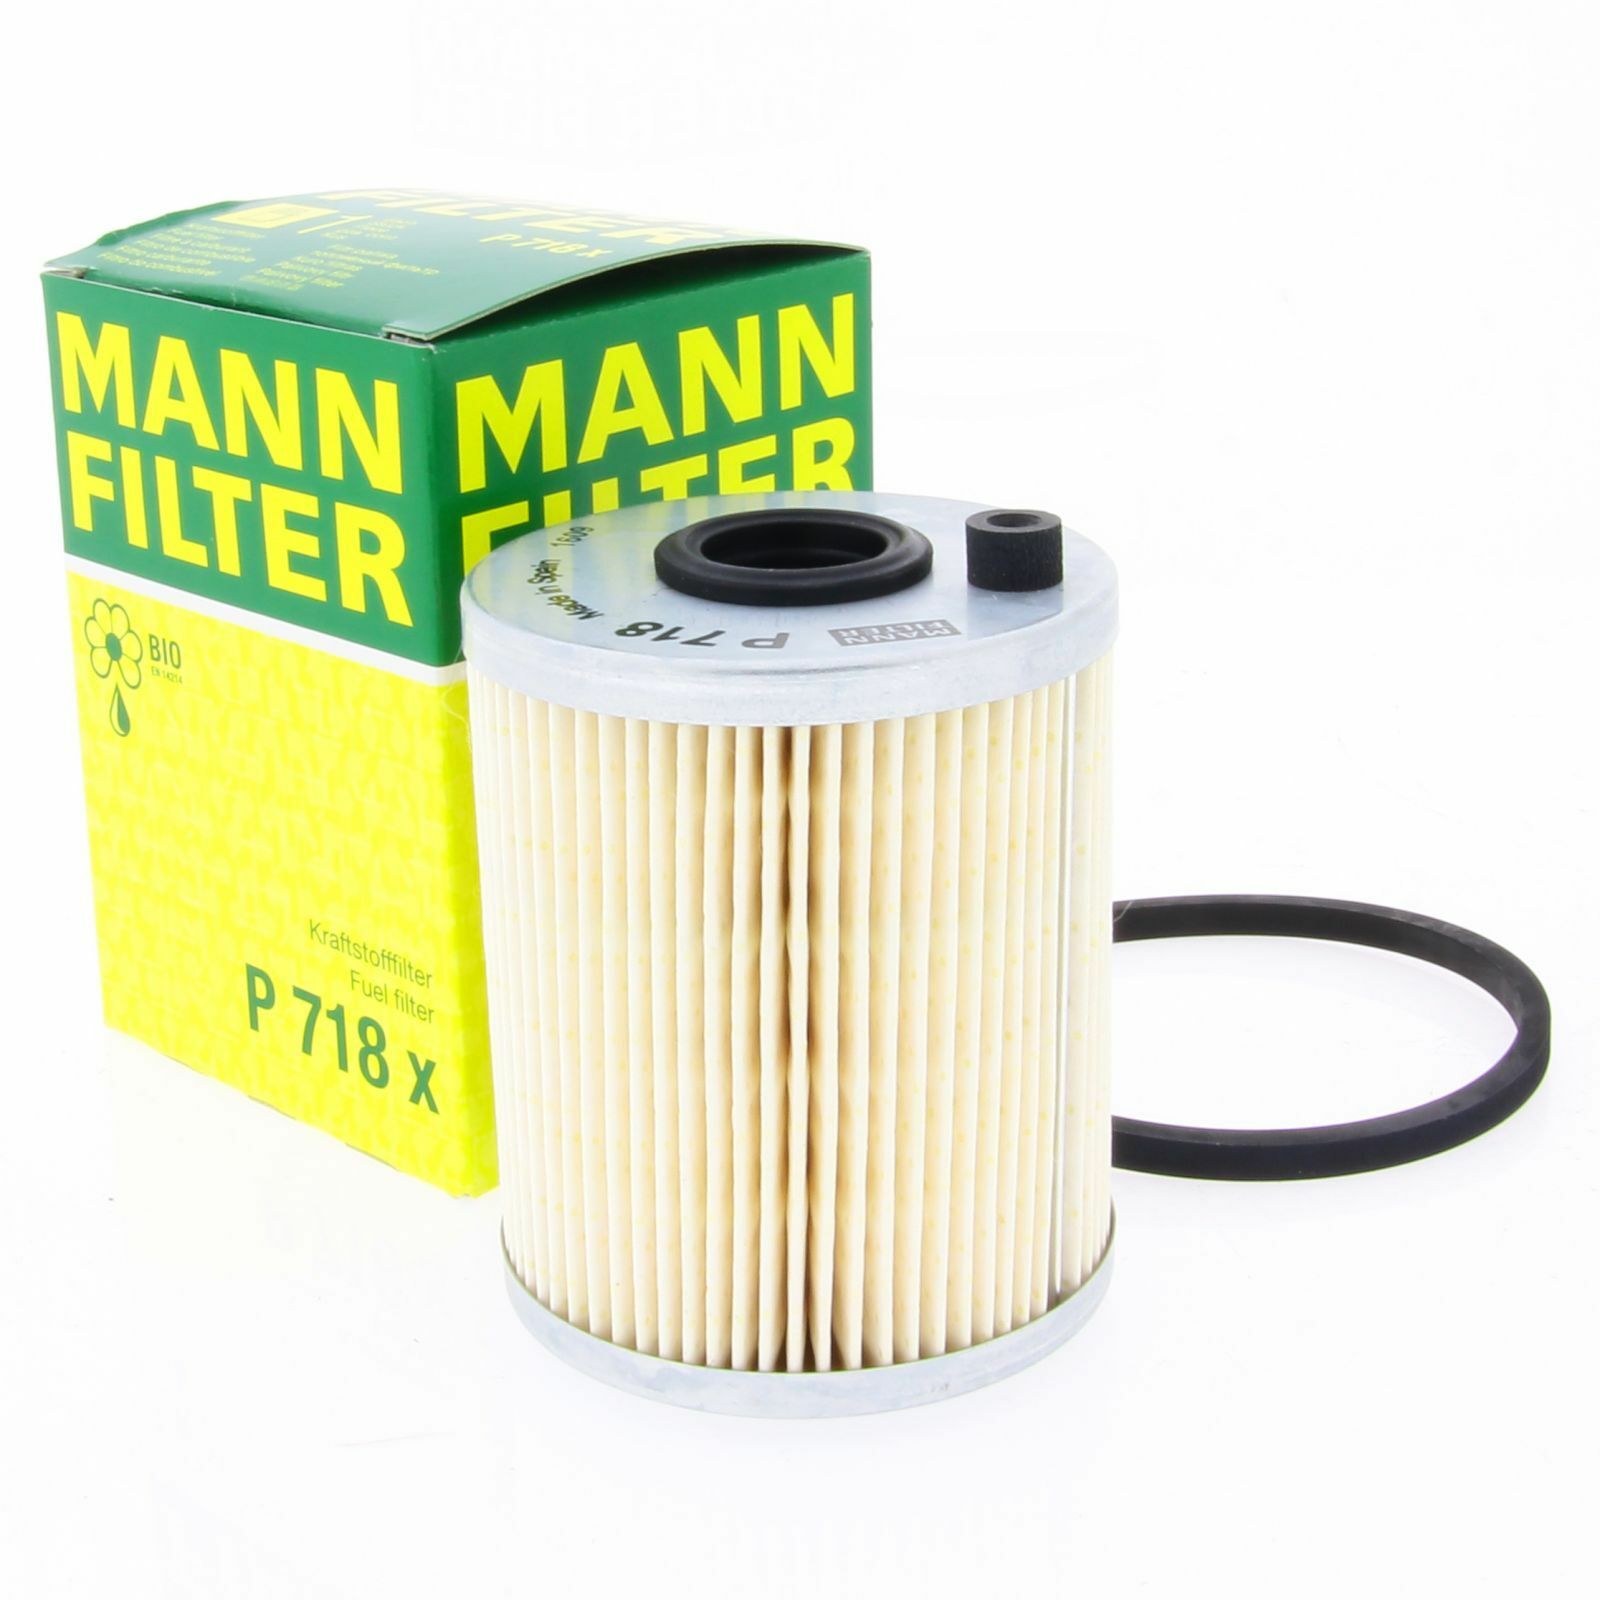 MANN Kraftstofffilter Fahrzeugfilter P718X Filter Nissan Opel Renault